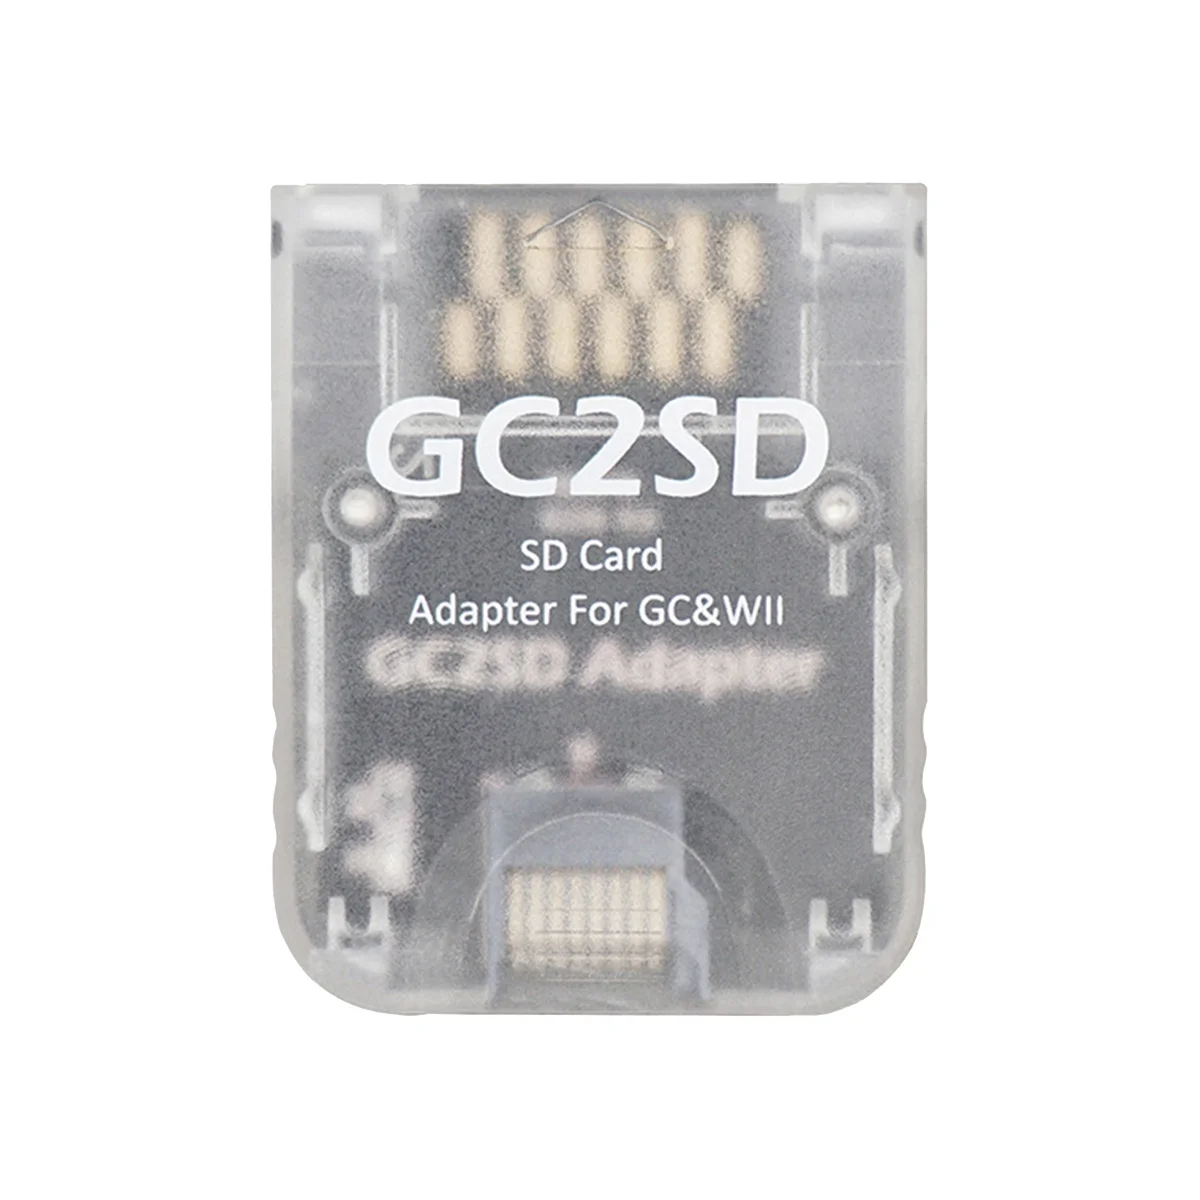 Gc2sd gc zu sd karten adapter für ngc gamecube wii spielkonsole (c)